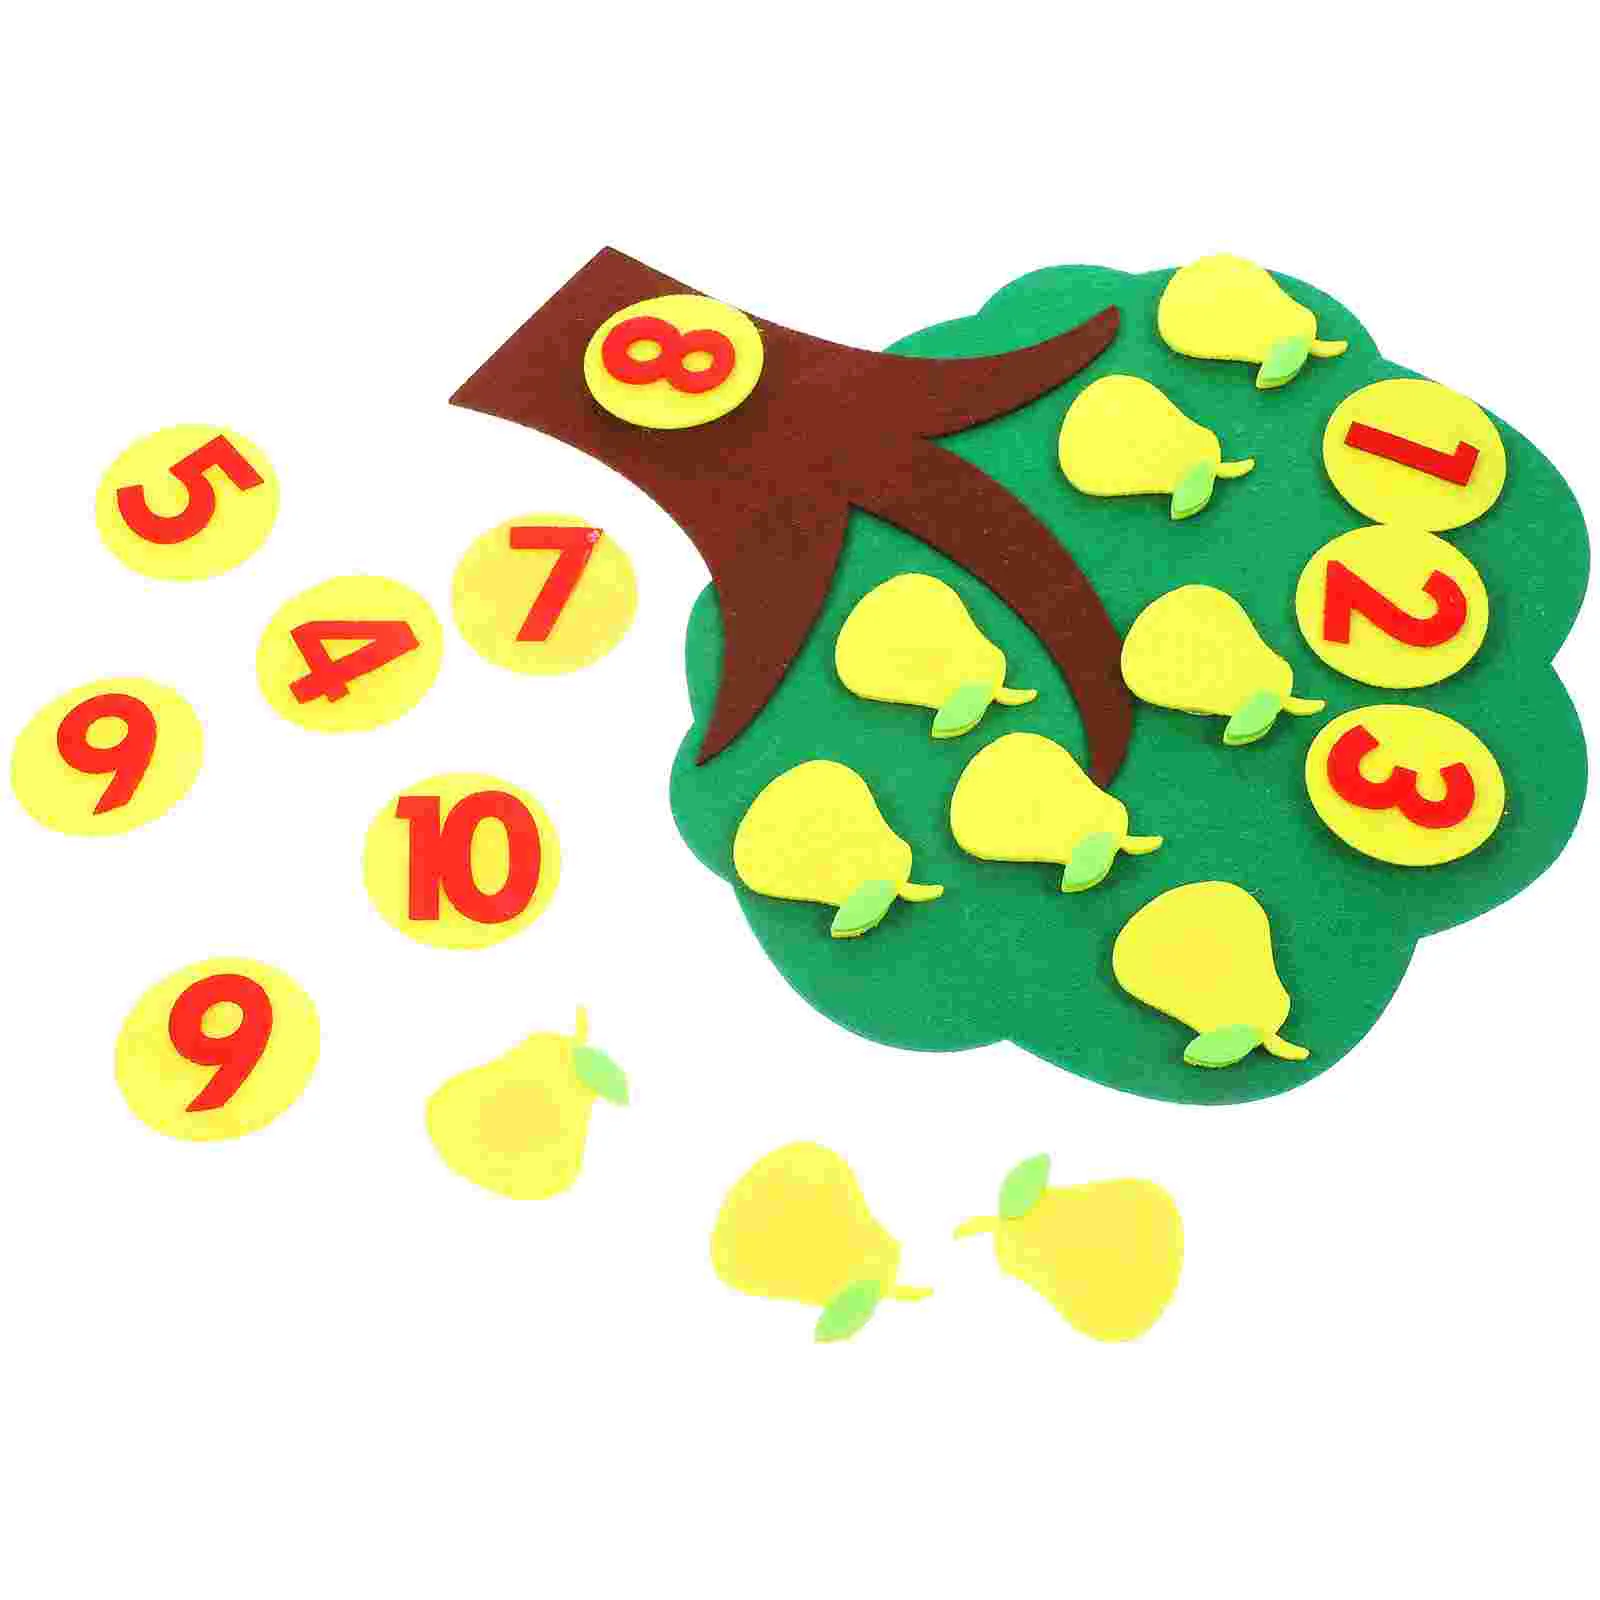 

Войлочное дерево, математические игры для обучения, сложение и вычитание с числами 1-10 в классе детского сада